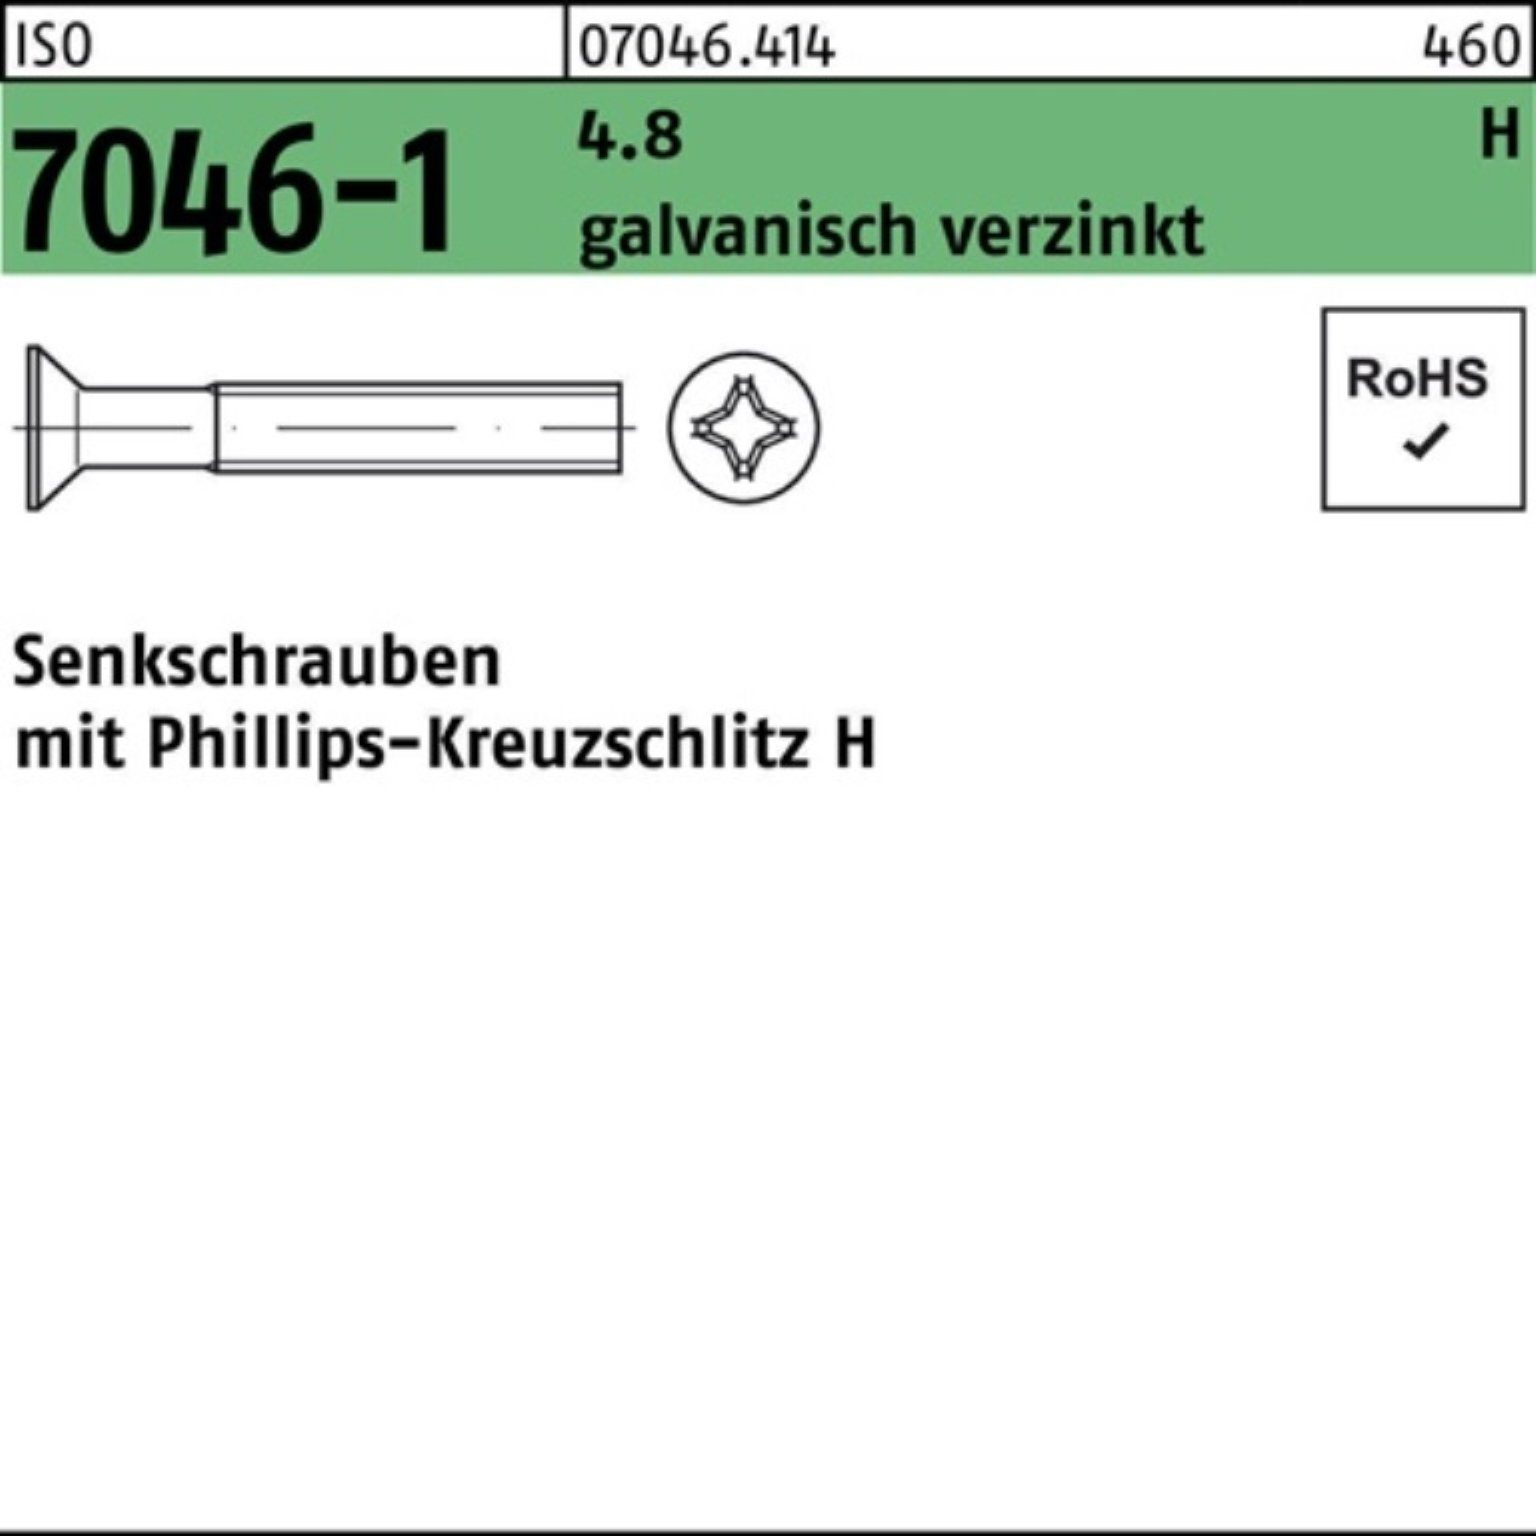 ISO Senkschraube 4.8 200St. galv.verz. Senkschraube M6x8-H Reyher 7046-1 PH Pack 200er ISO